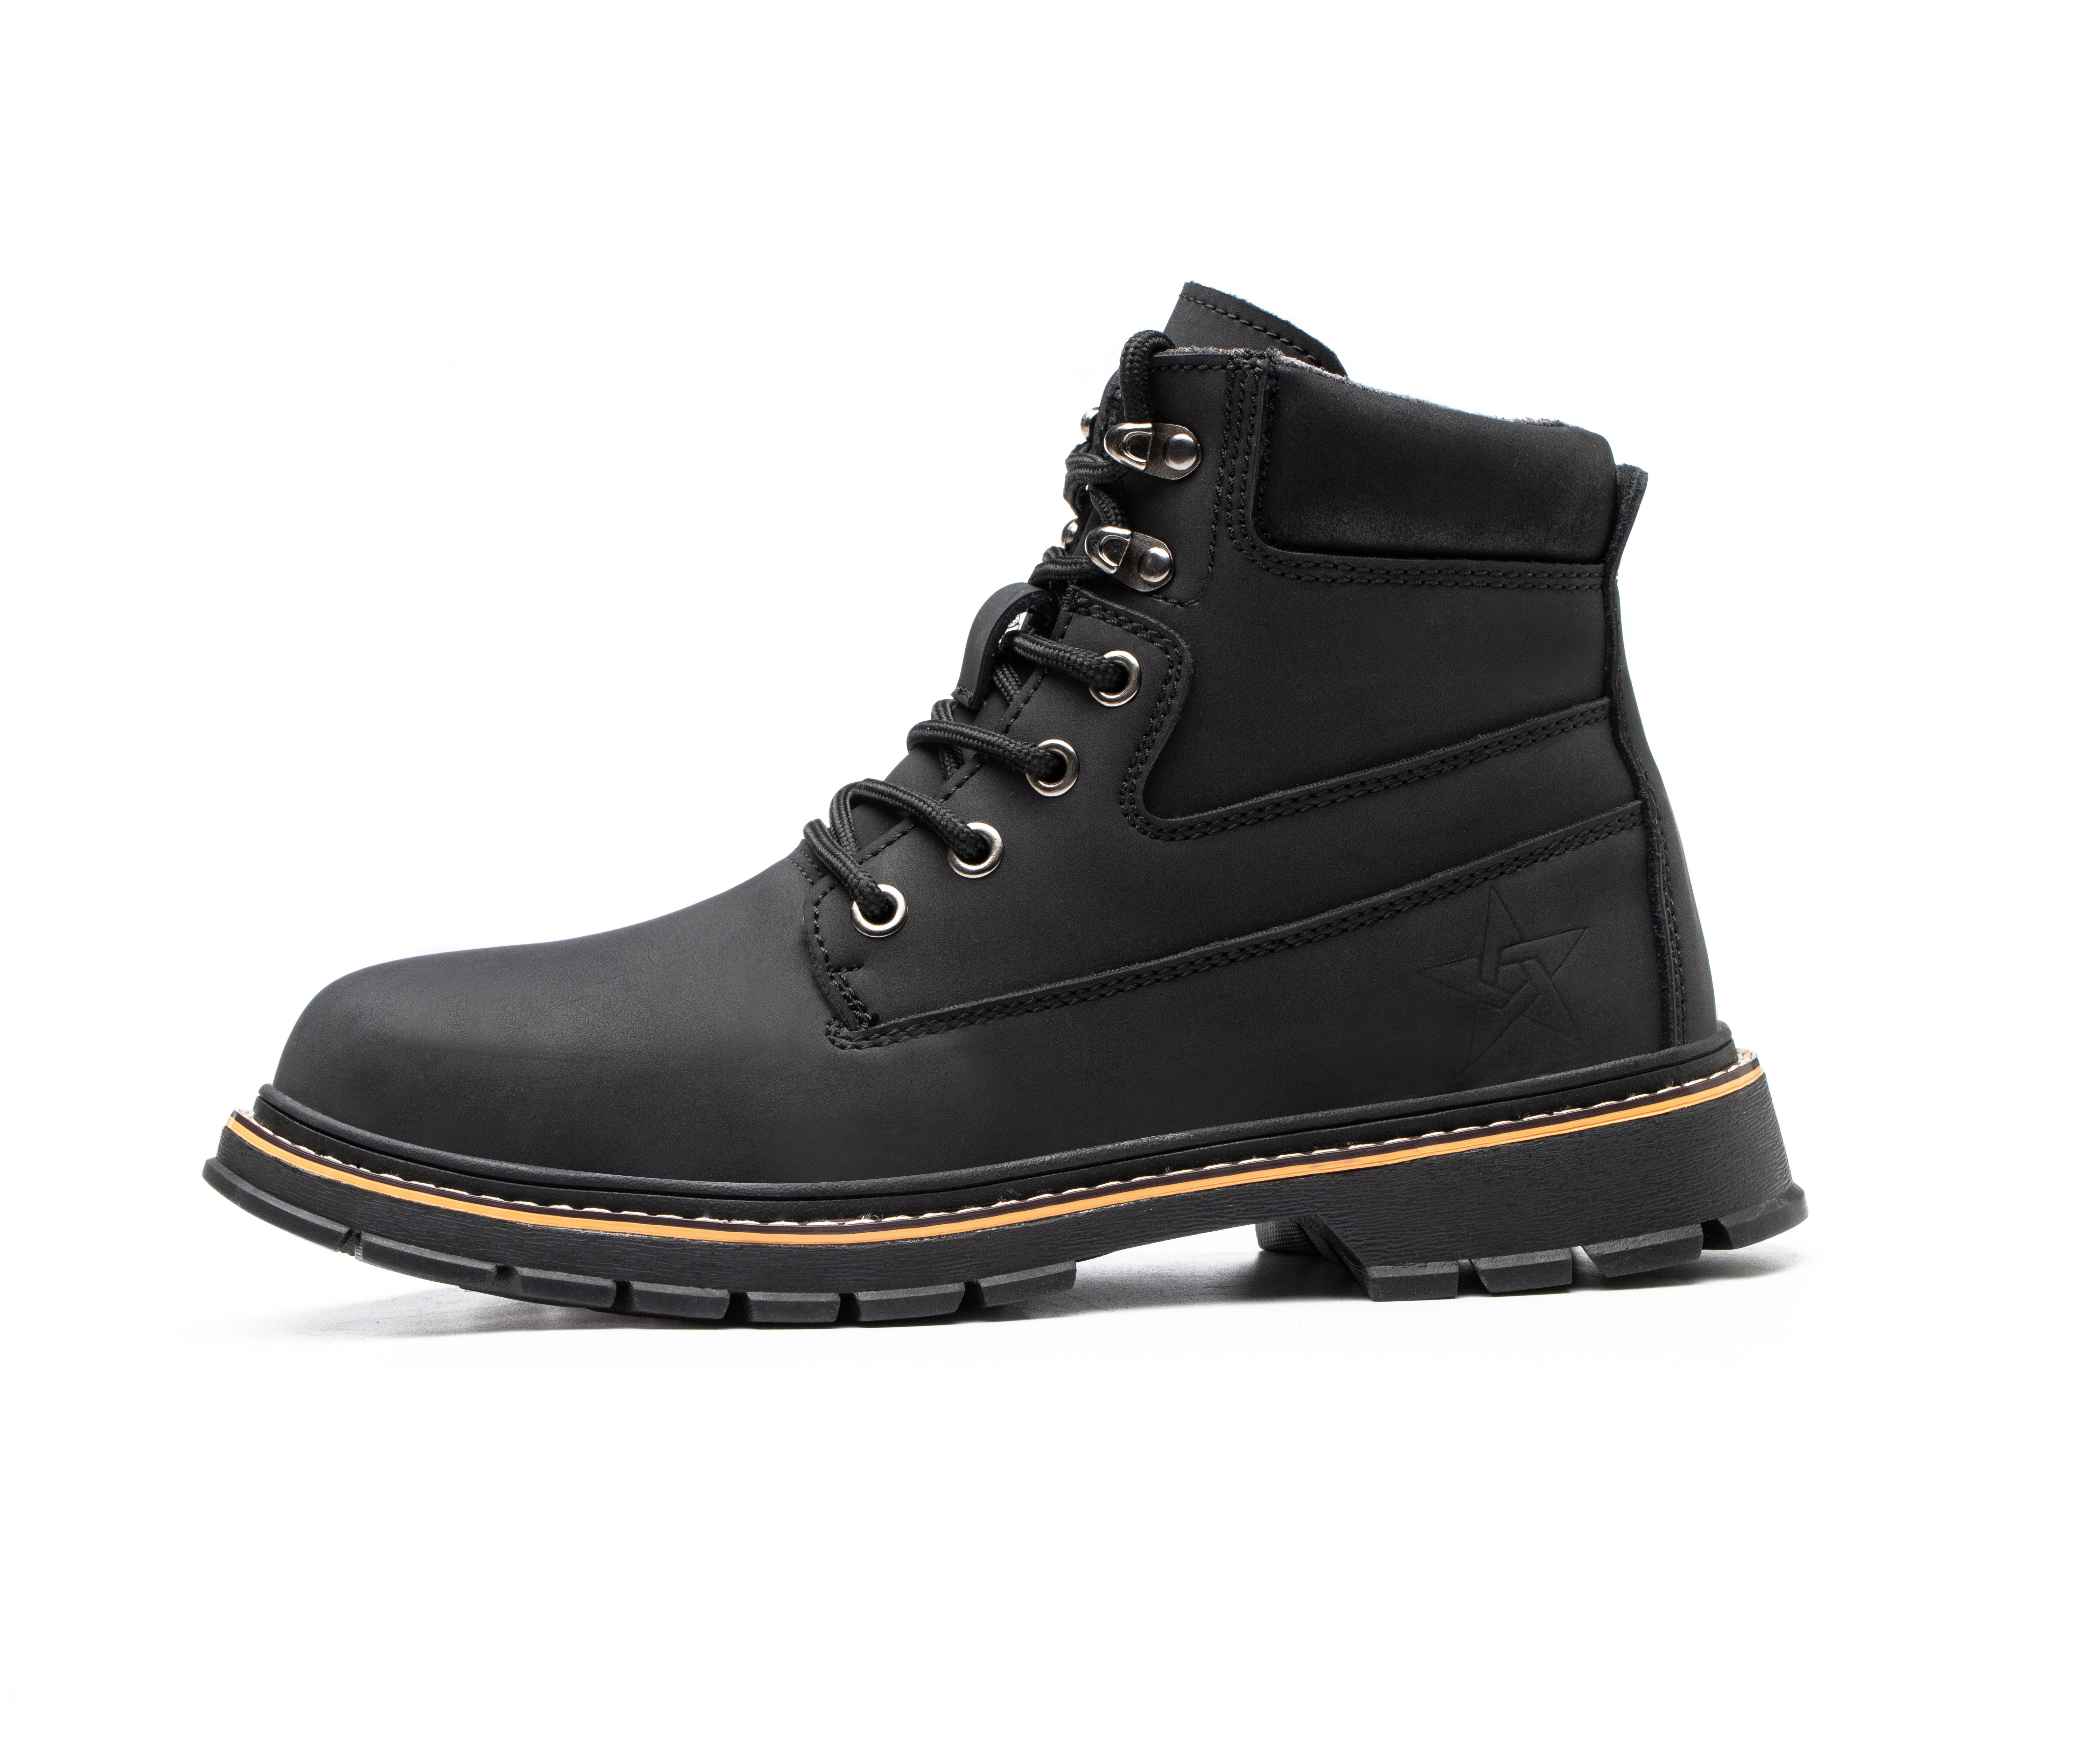 Men's Steel Toe Safety Boots - Model 916 SafeAlex.com